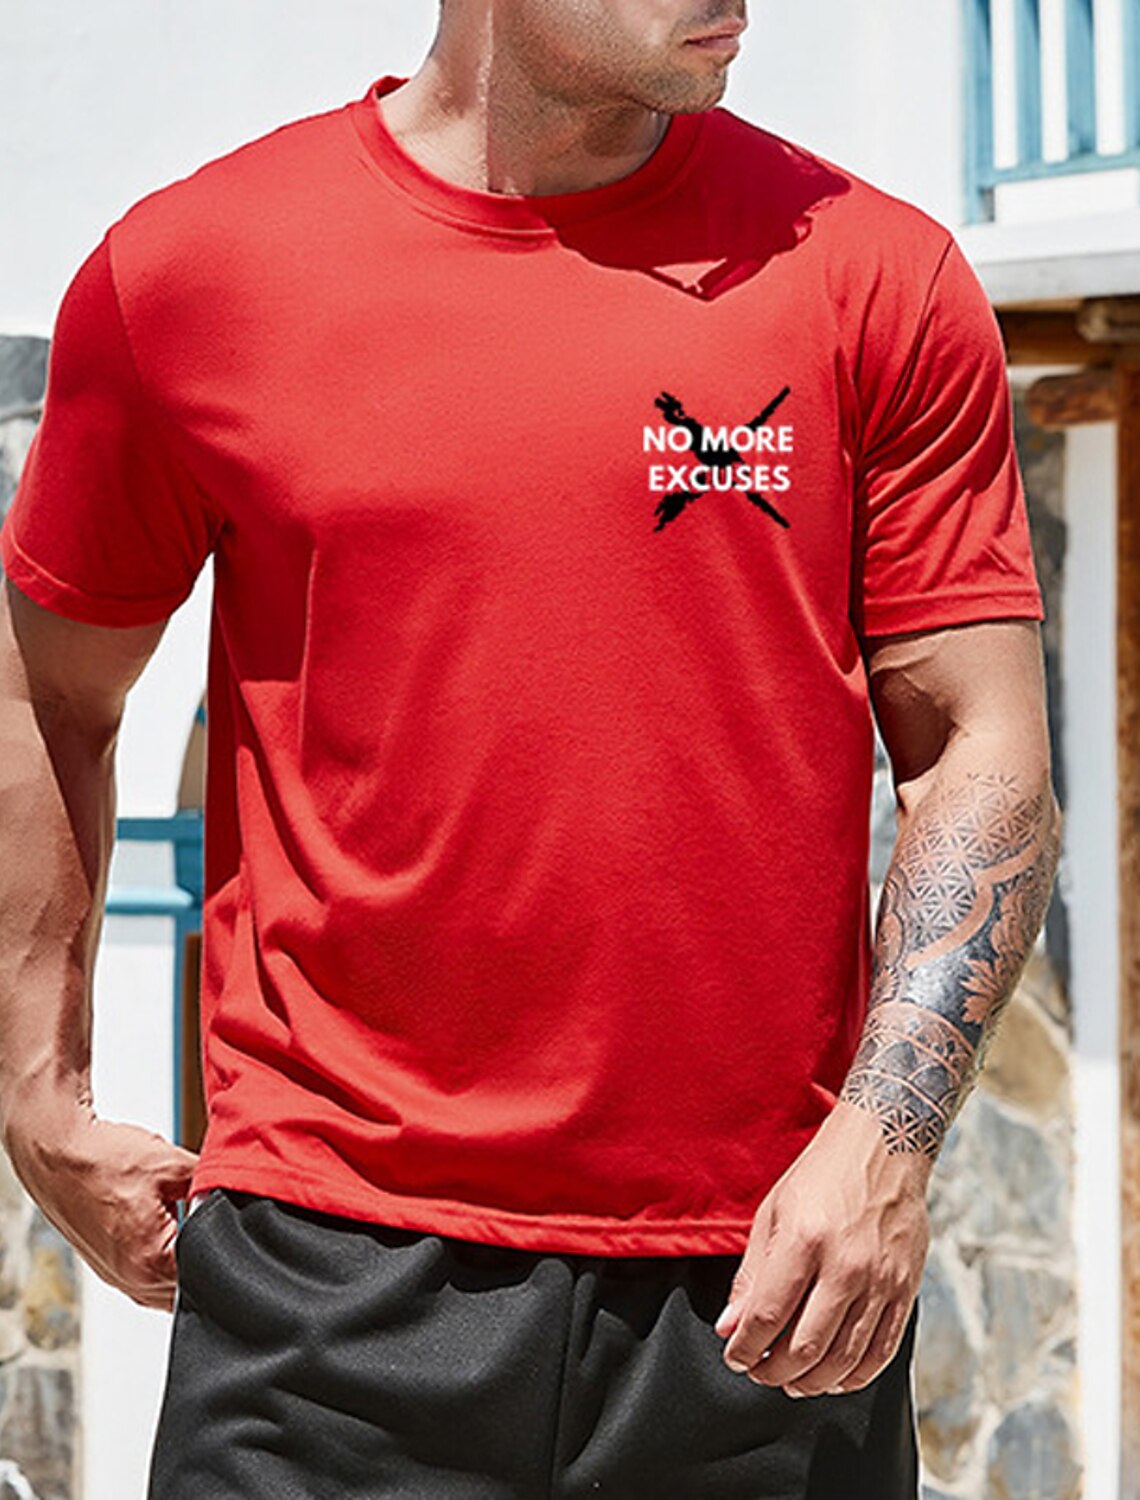 Caqui S-2XL Camiseta para Hombre Crew Neck Camiseta para Hombre Camiseta De Manga Corta Estampada En 3D De Primavera Y Verano para Hombre Moda Casual Camiseta Estilo Deportivo